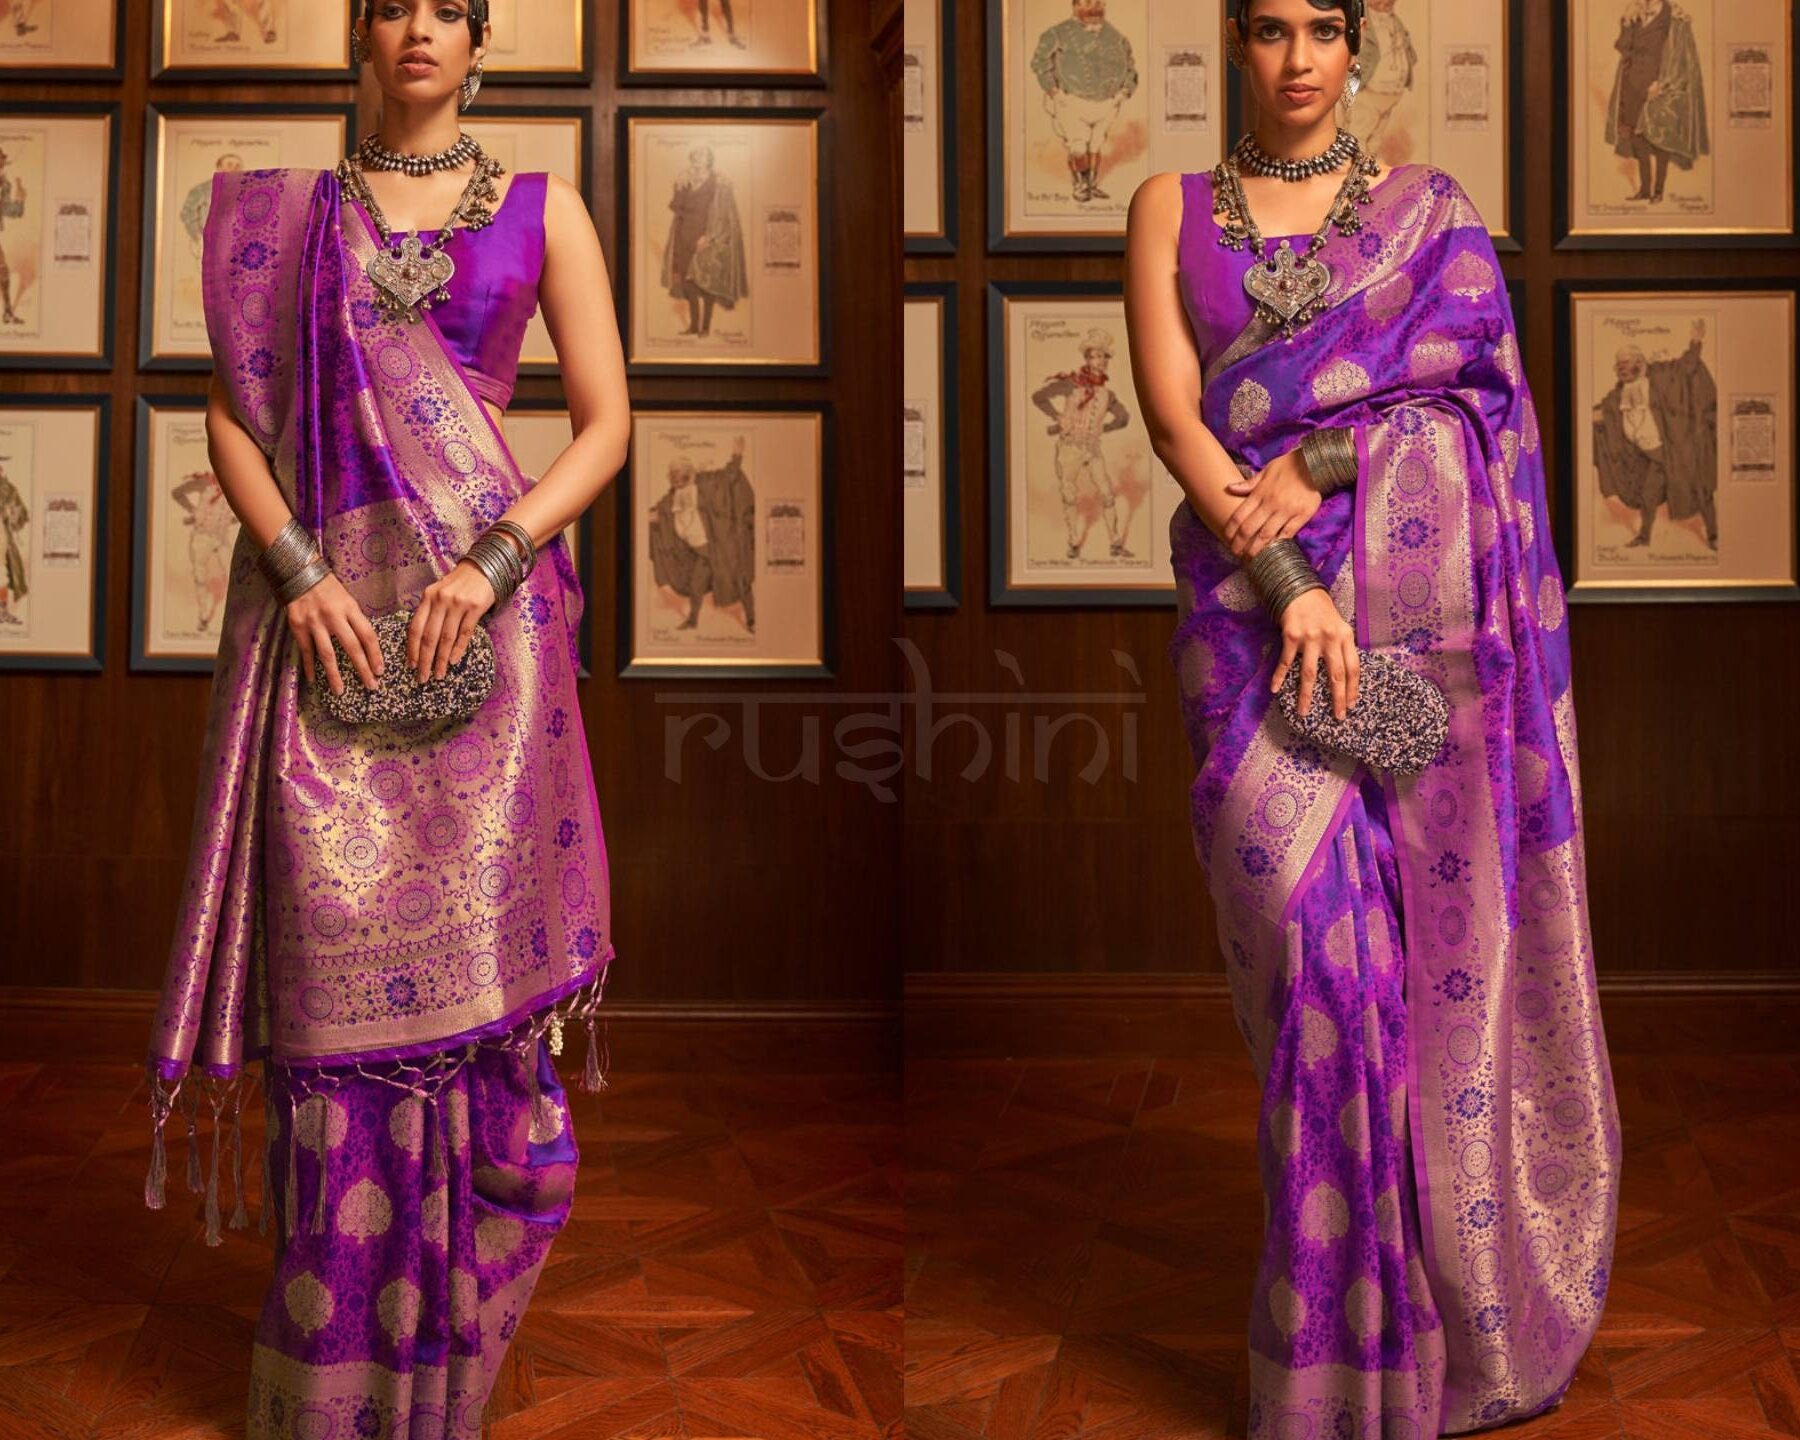 Vestimenta tradicional de la India: el fascinante mundo de los saris y trajes regionales.